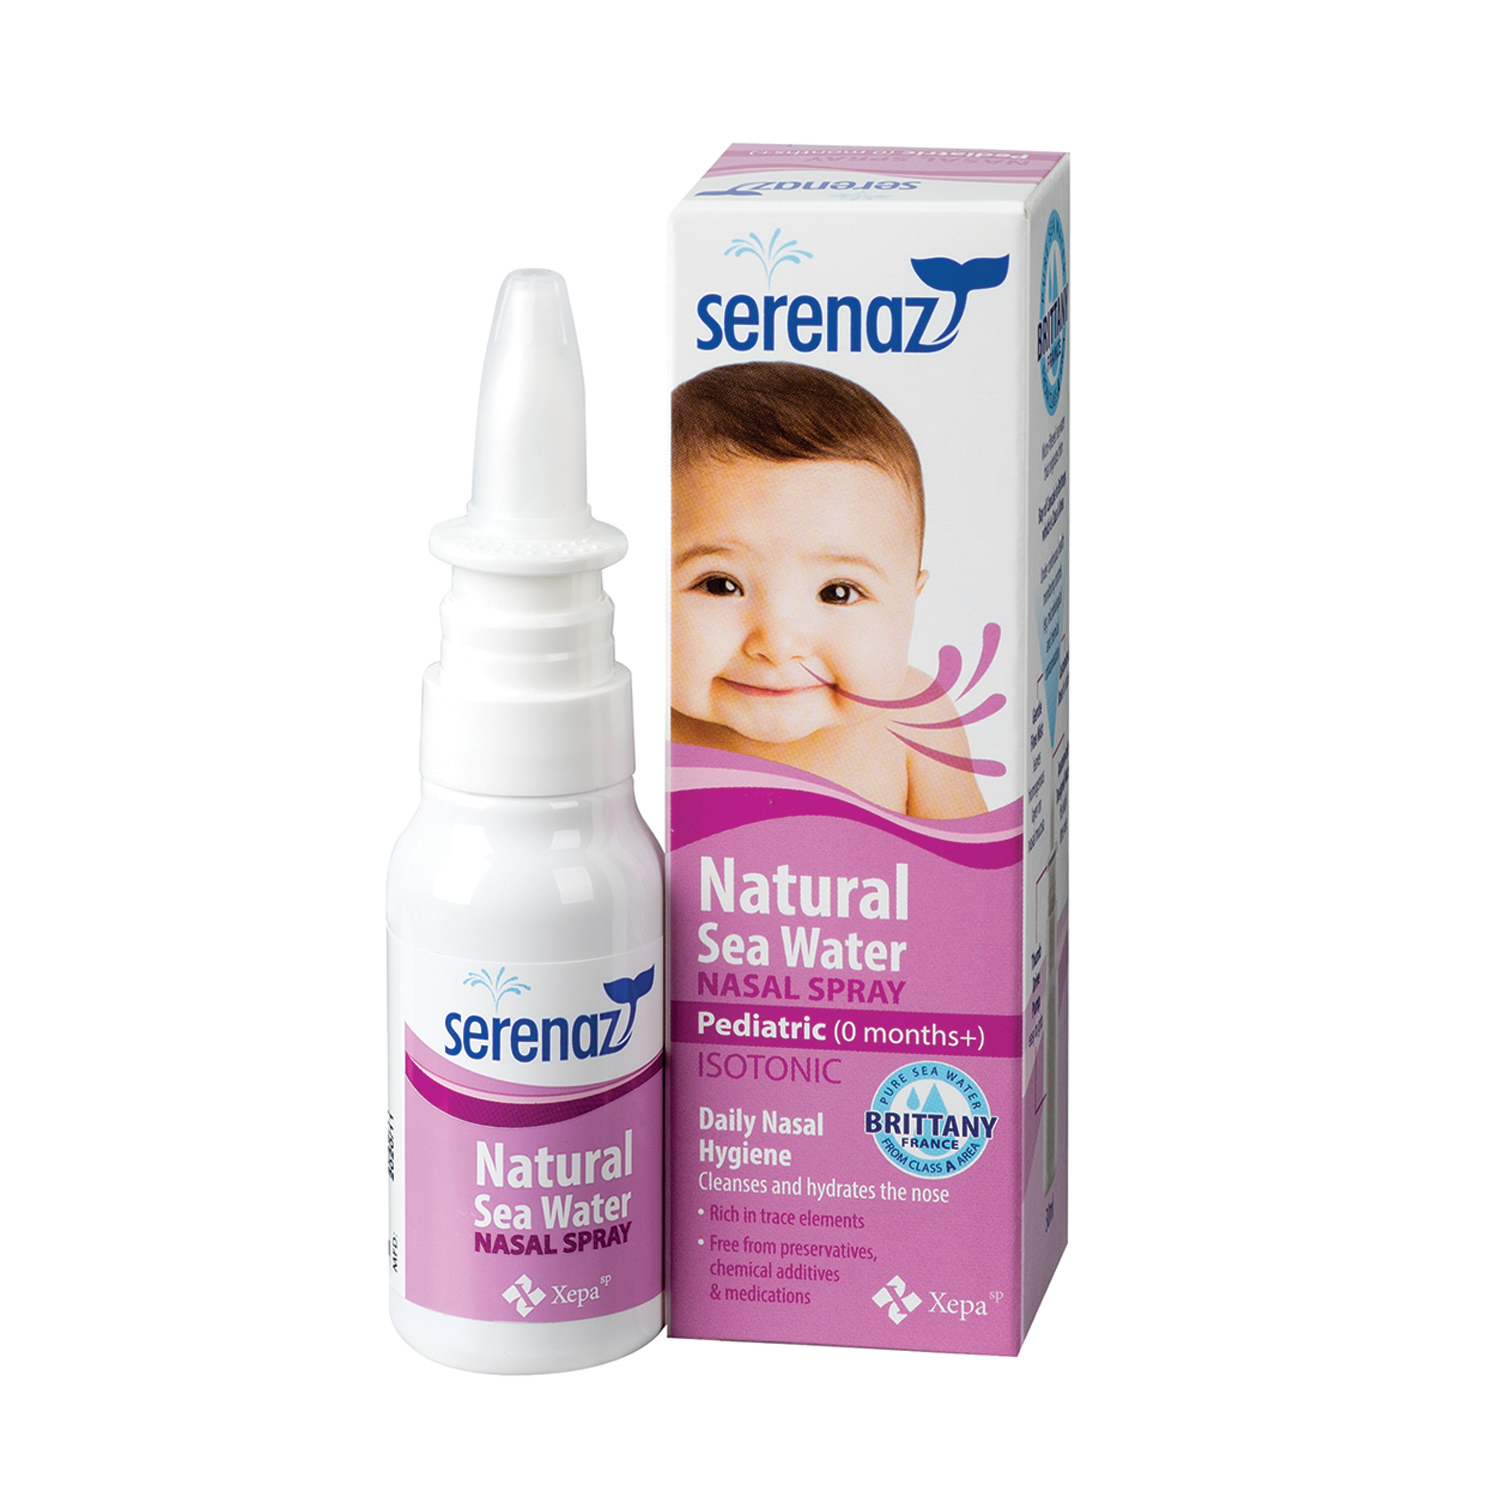 serenaz-natural-sea-water-nasal-spray-pediatric-30ml